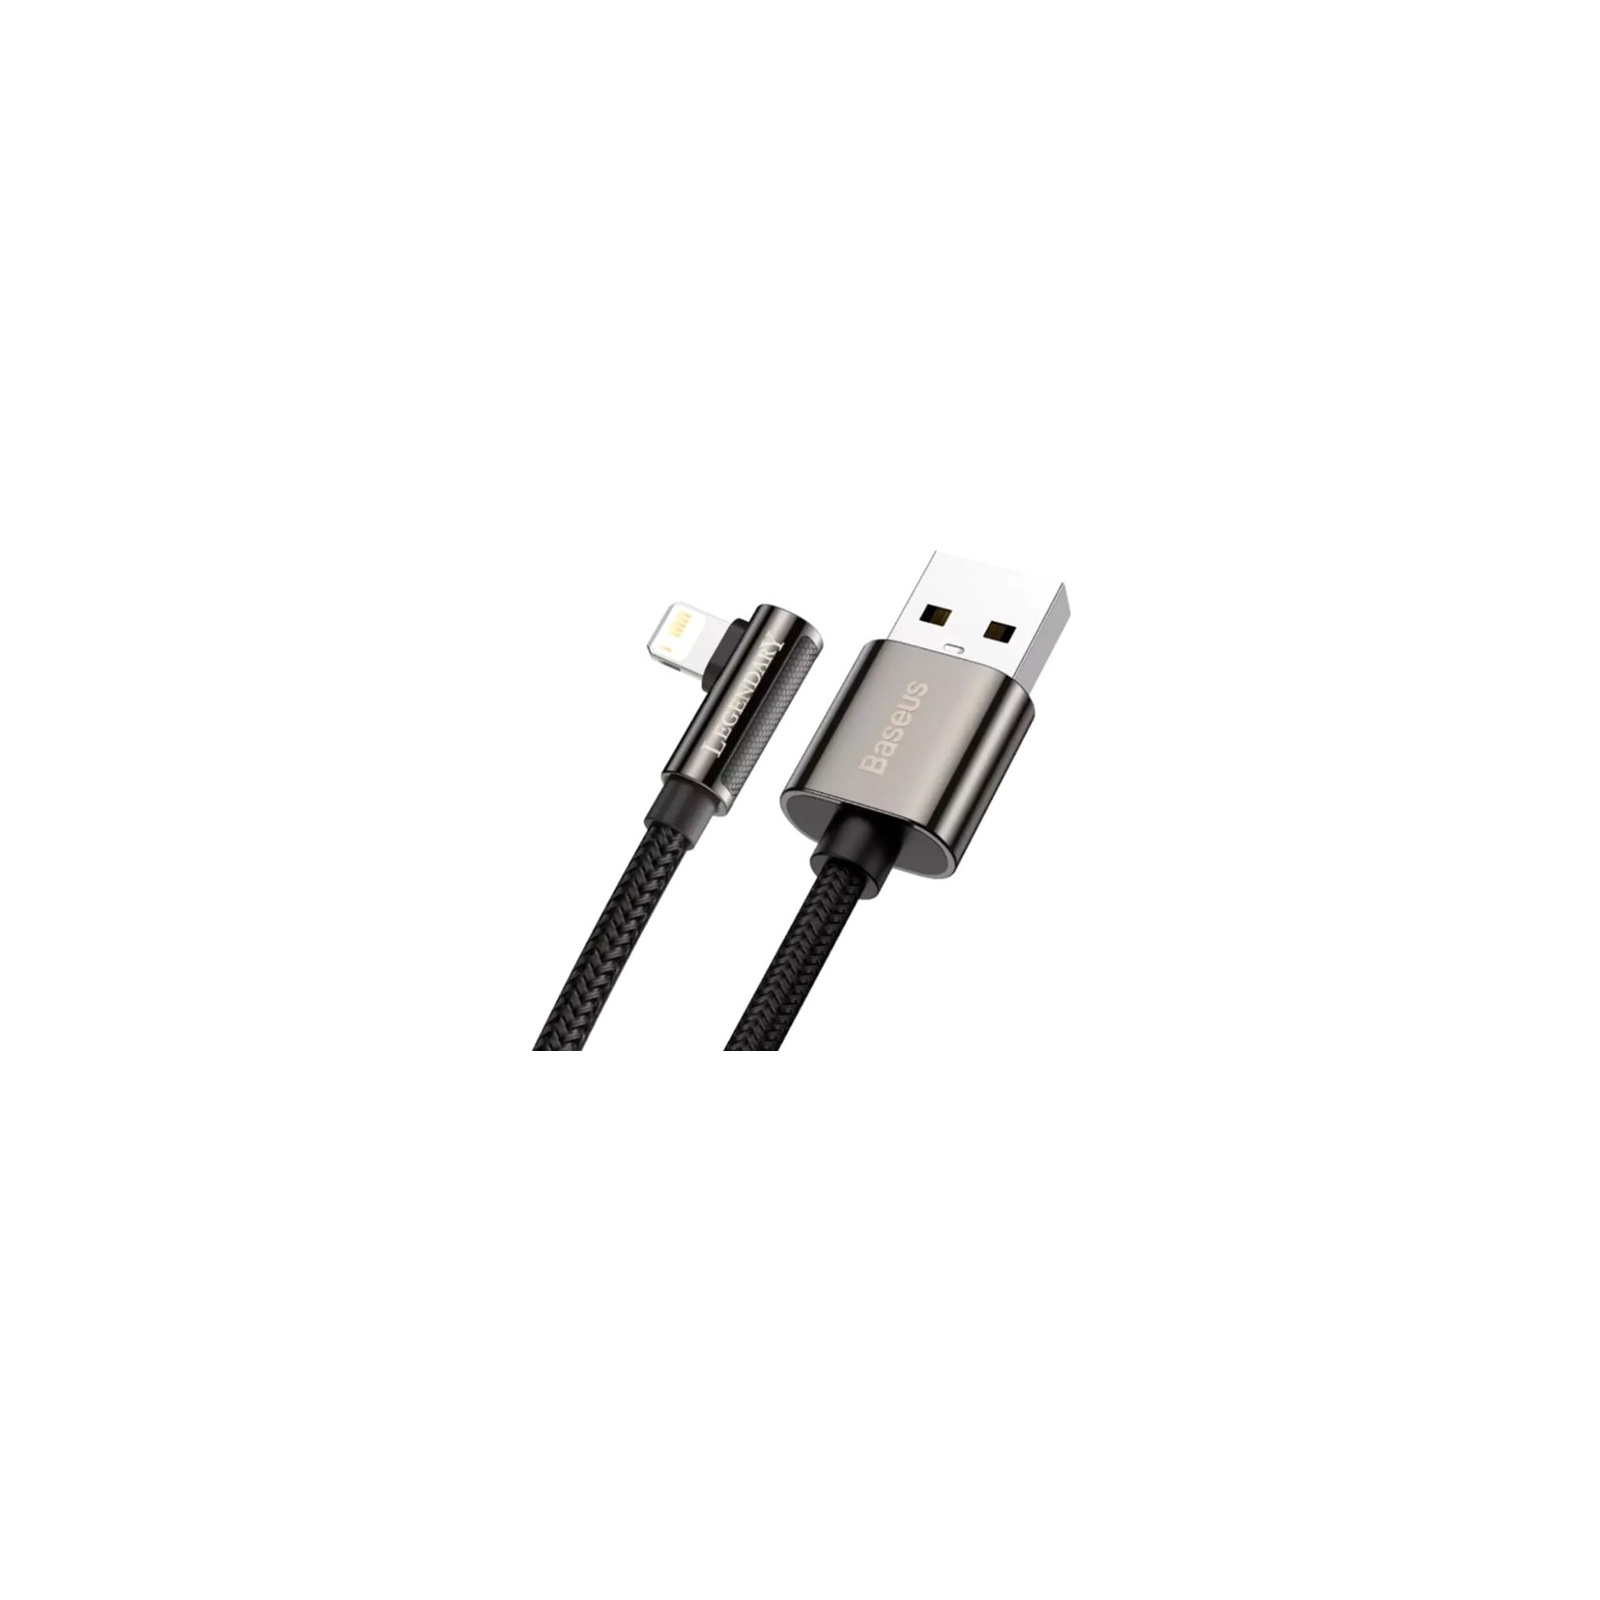 Дата кабель USB 2.0 AM to Lightning 2.0m CALCS 2.4A 90 Legend Series Elbow Black Baseus (CALCS-A01) изображение 2